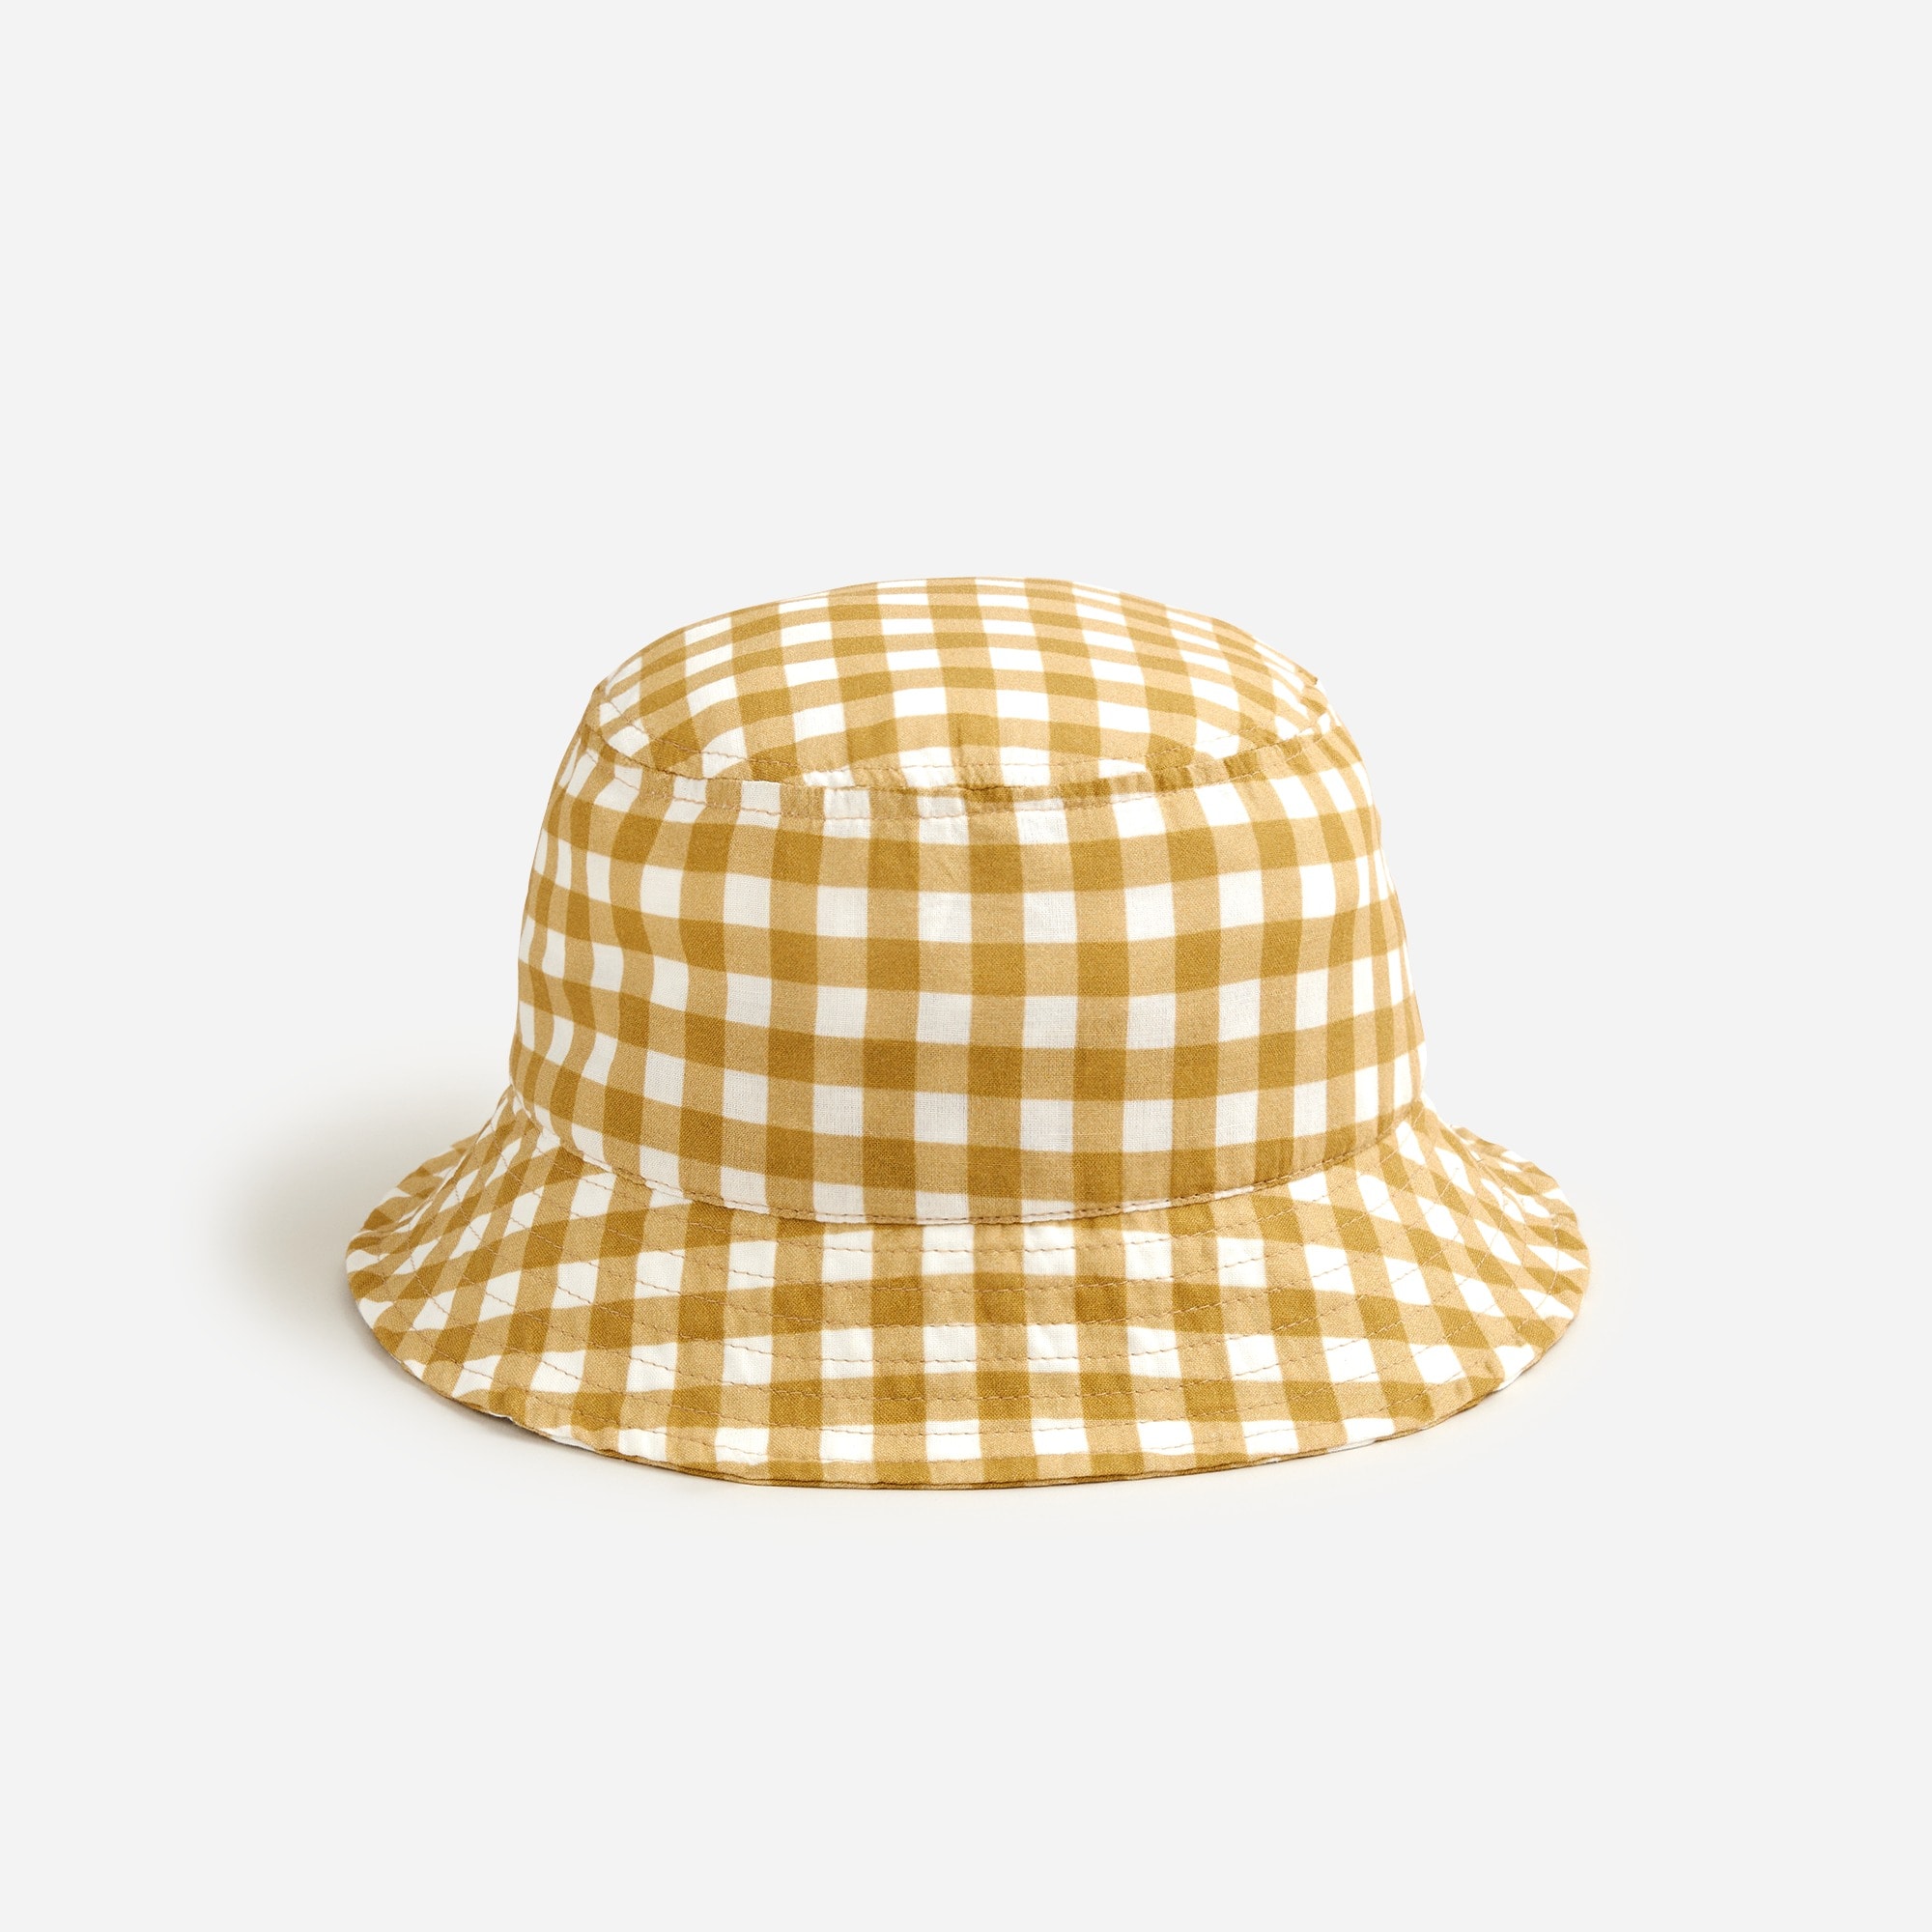  Packable bucket hat in prints